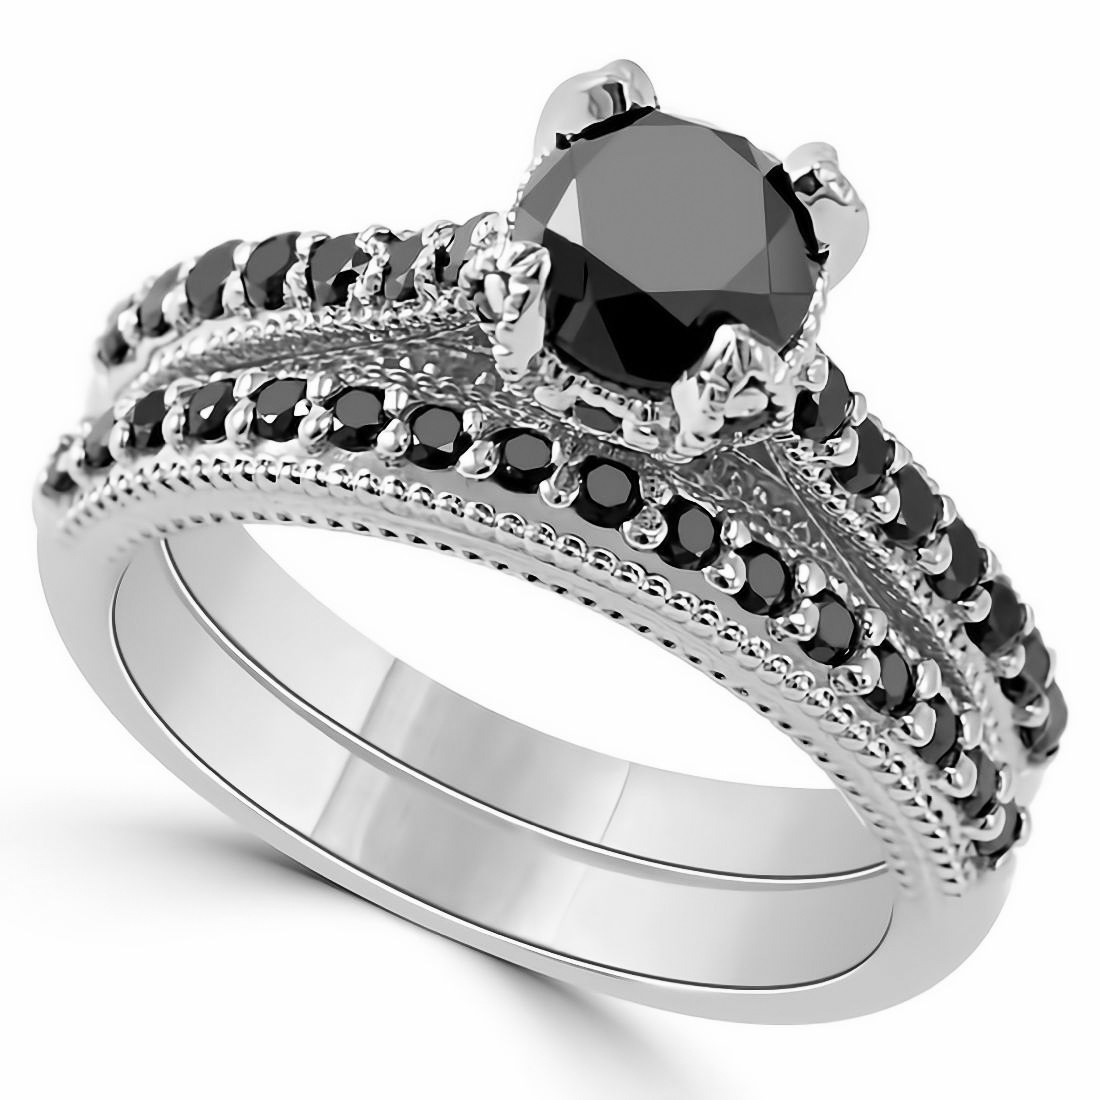 Unique Black Diamond Engagement Ring Set Vintage Style